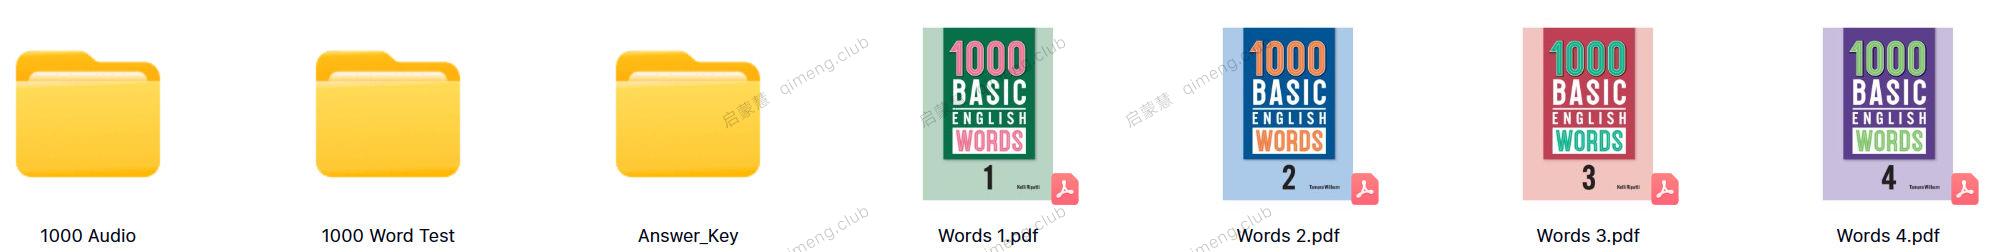 新版核心词汇1000词《1000 Basic English Words》4册全套资料 测试+答案+音频